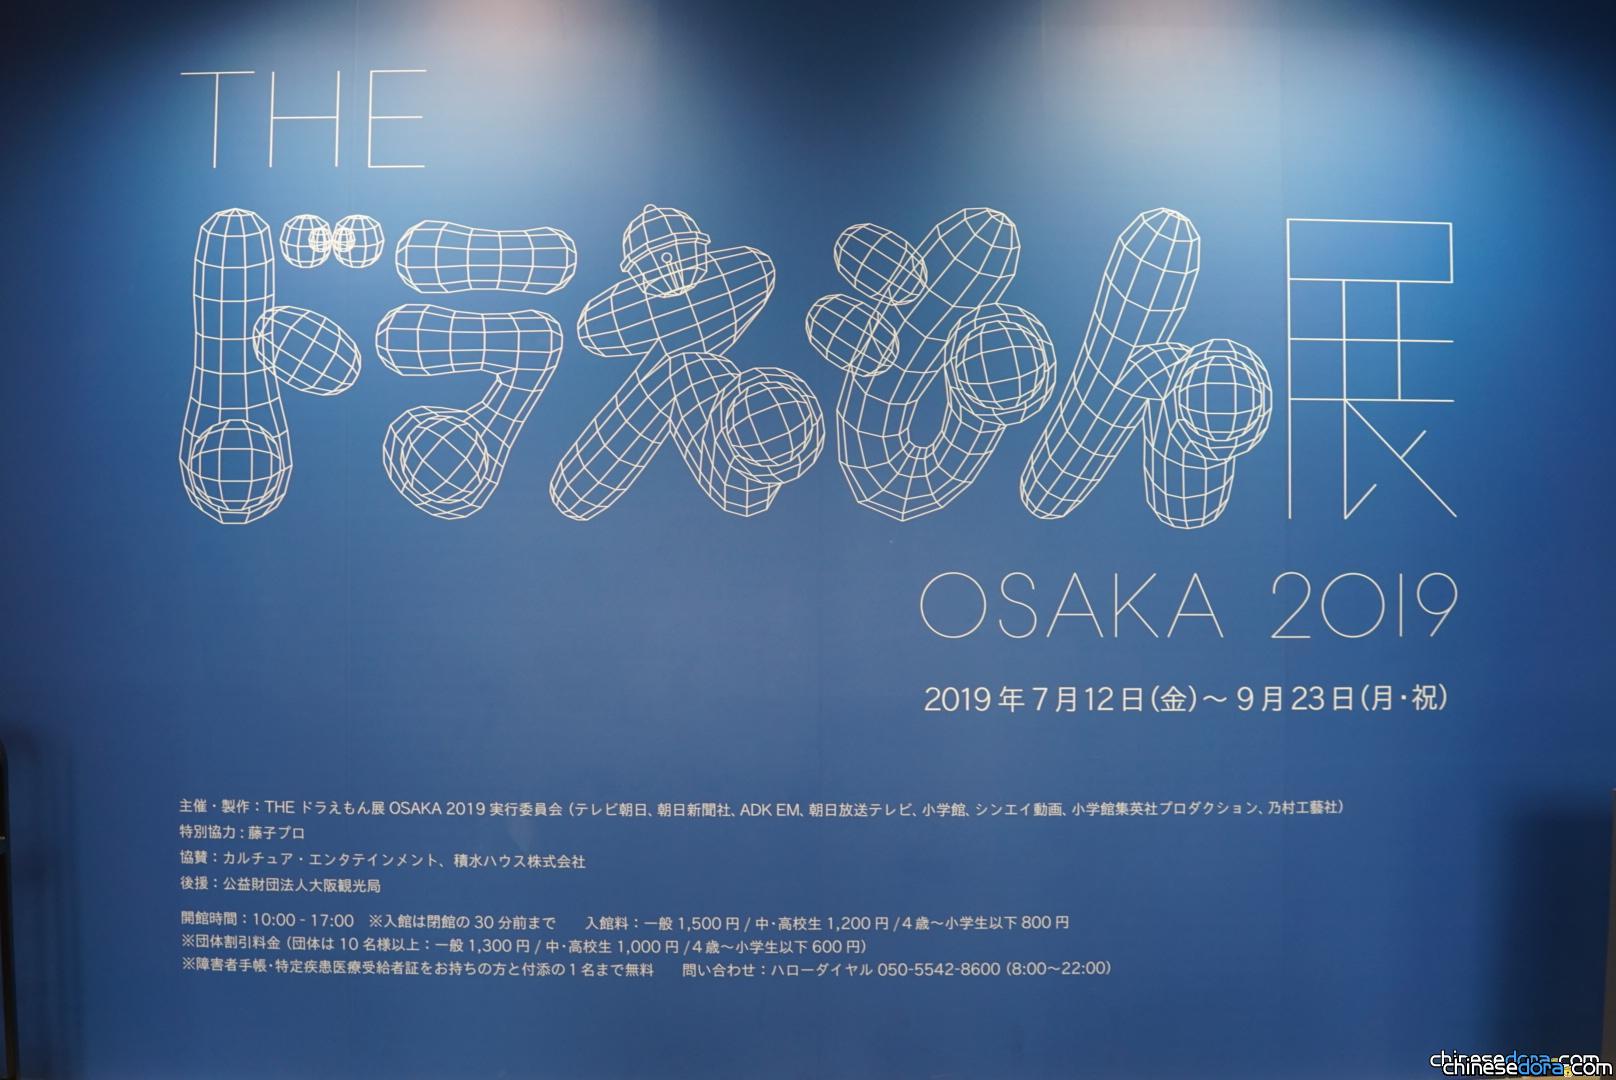 [日本] THE哆啦A夢展 OSAKA 2019 本站記者大阪文化館現場報道